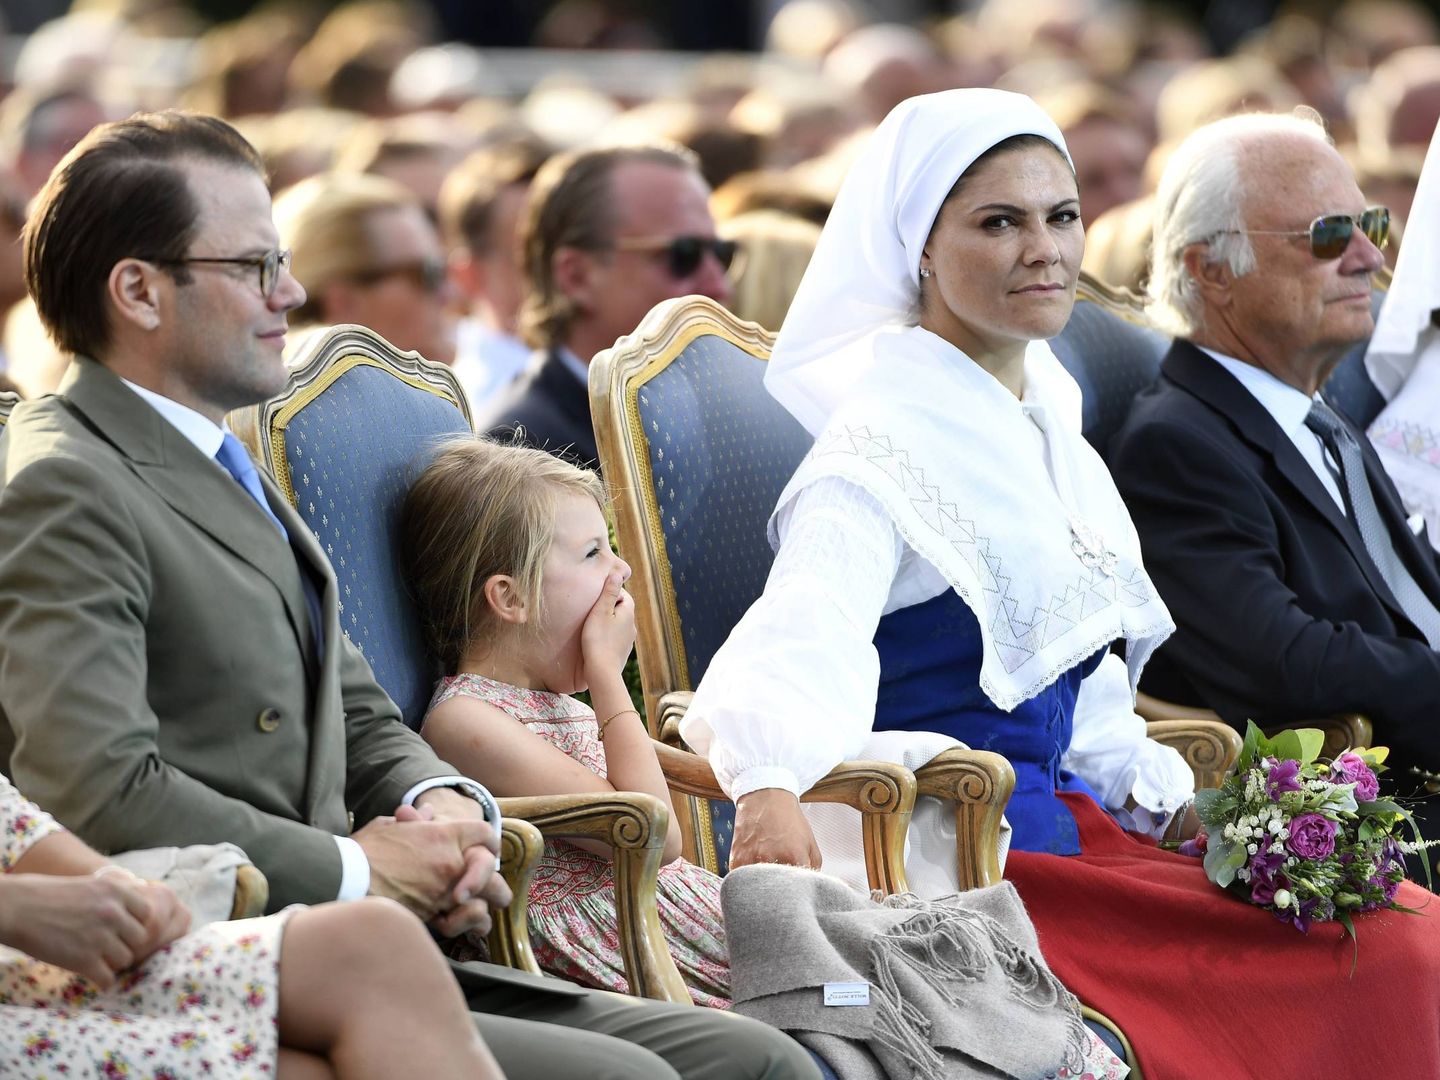 Victoria de Suecia, con el traje nacional de su país. (Cordon Press)